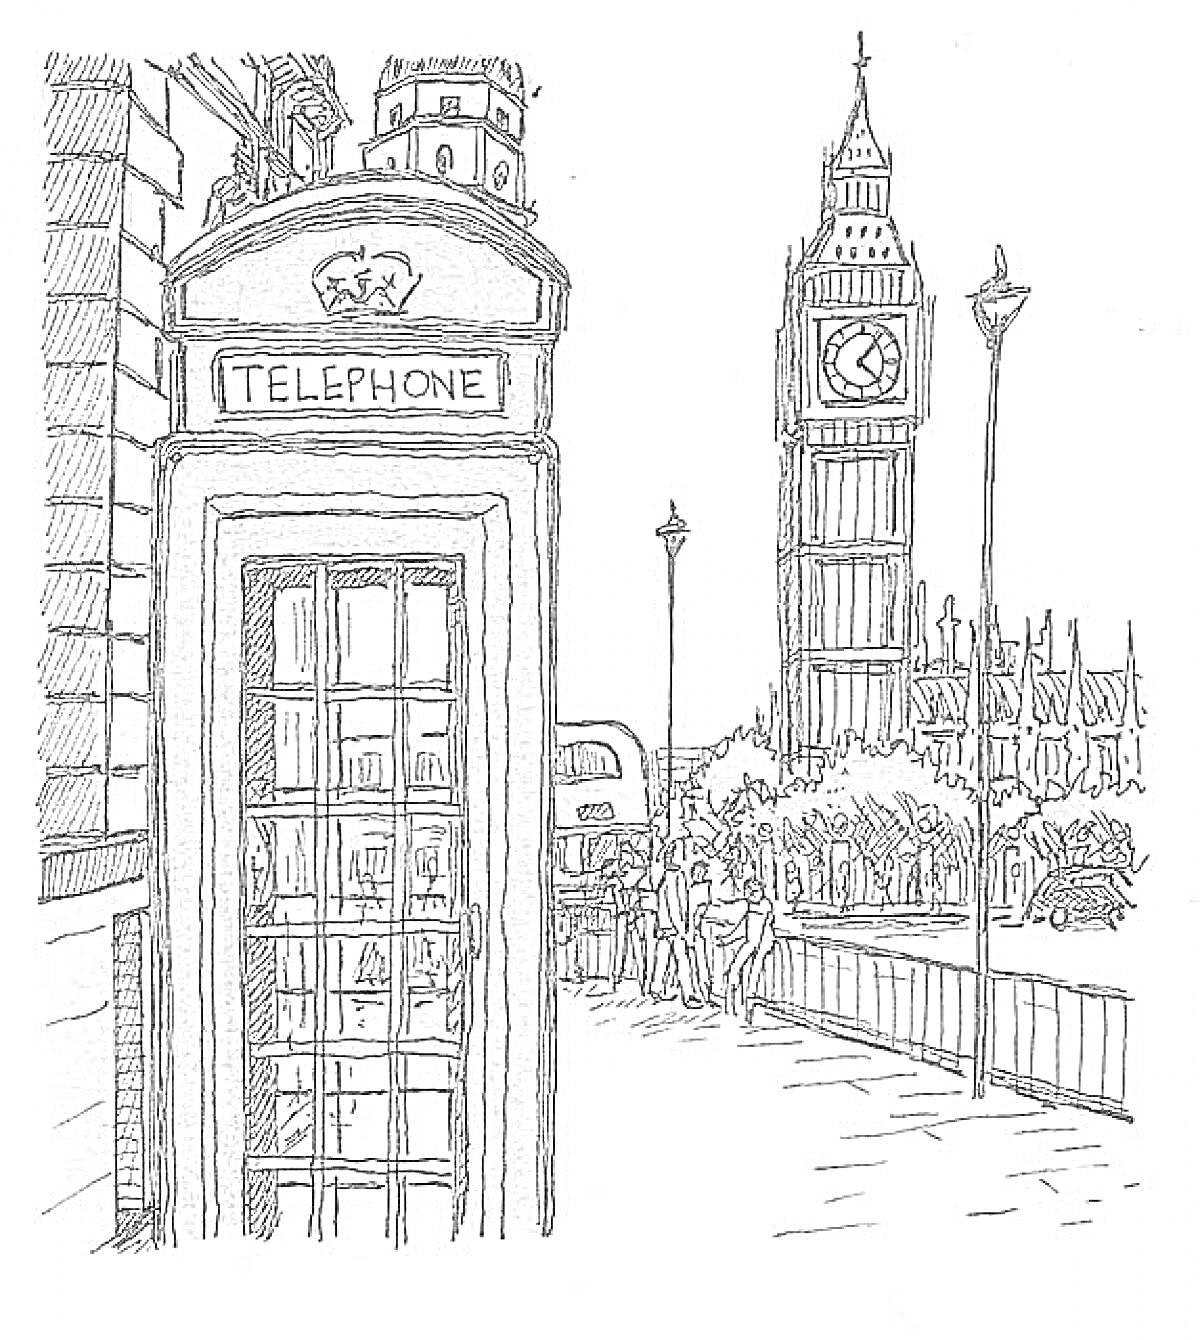 Раскраска Телефонная будка, автобус, люди, фонарные столбы, часы на башне, деревья, ограждение